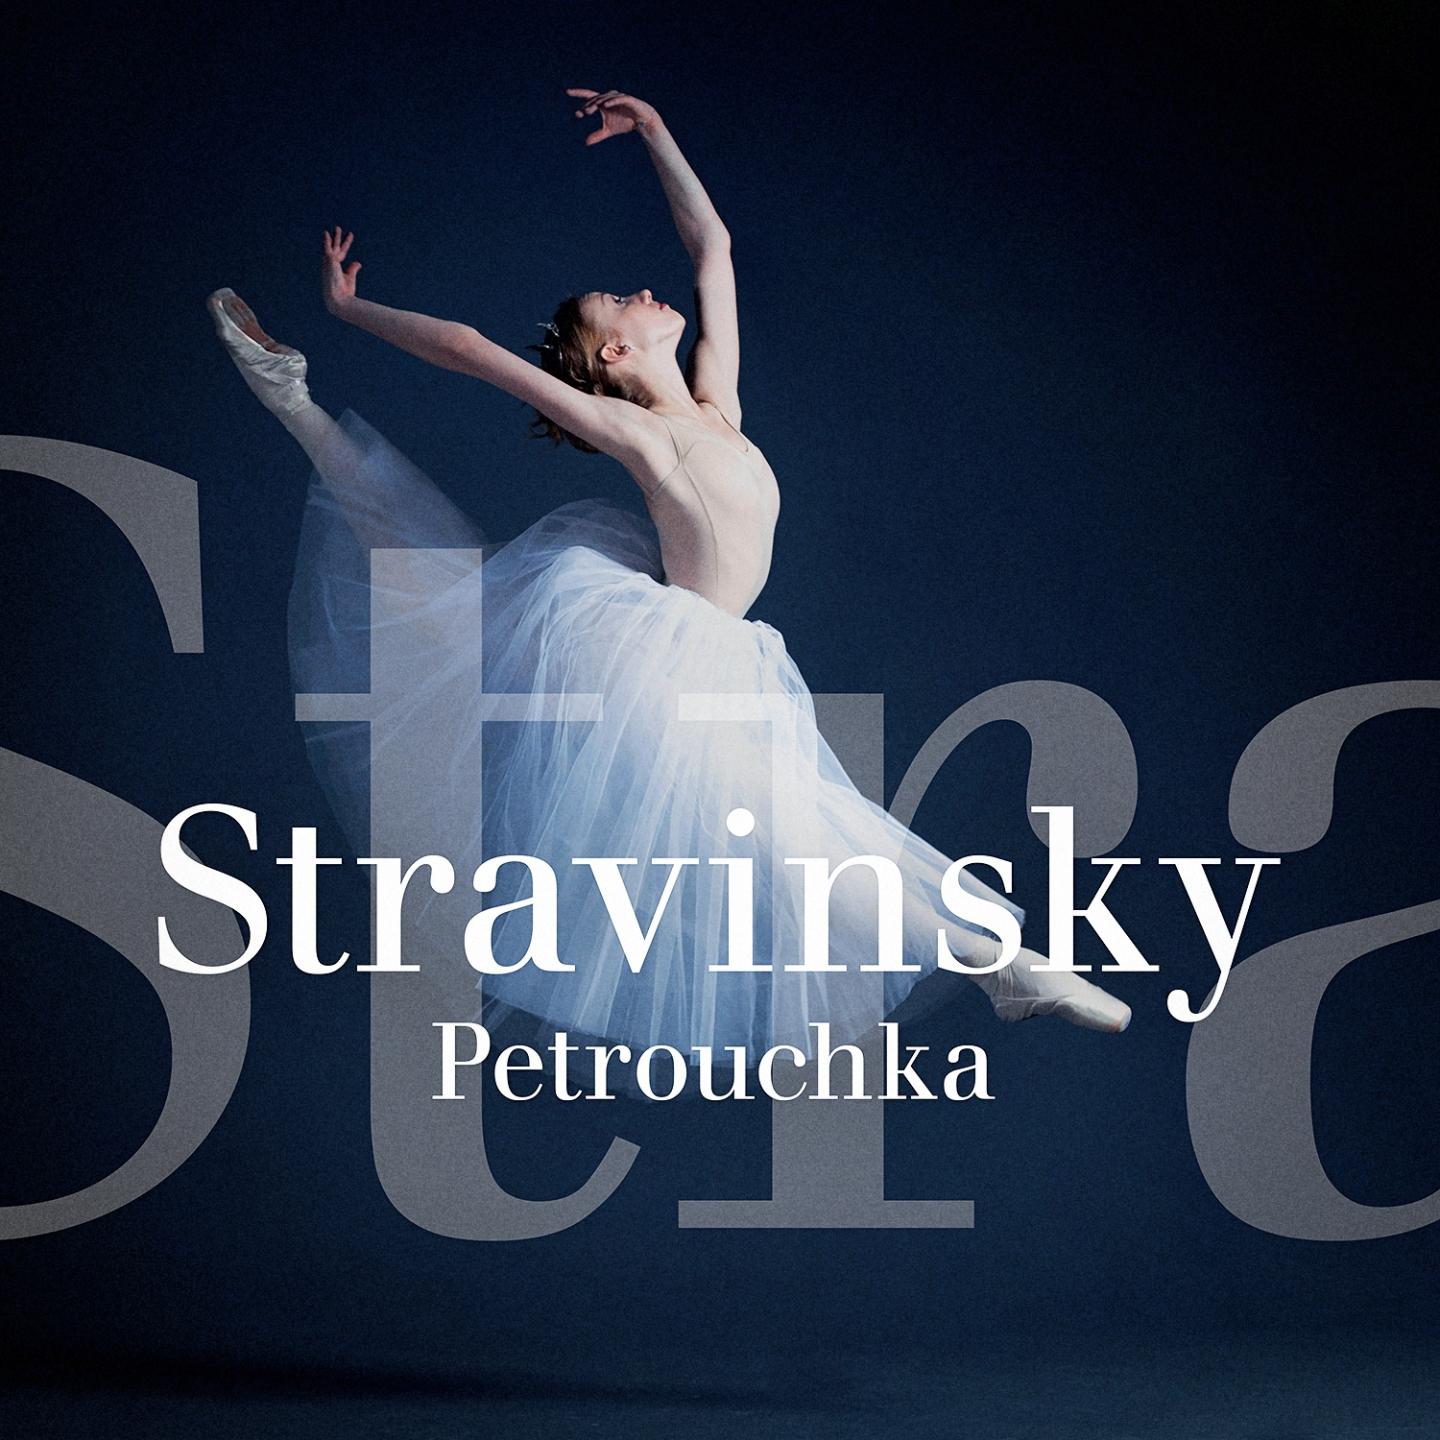 Petrouchka: Le tour de passe-passe / Danse russe